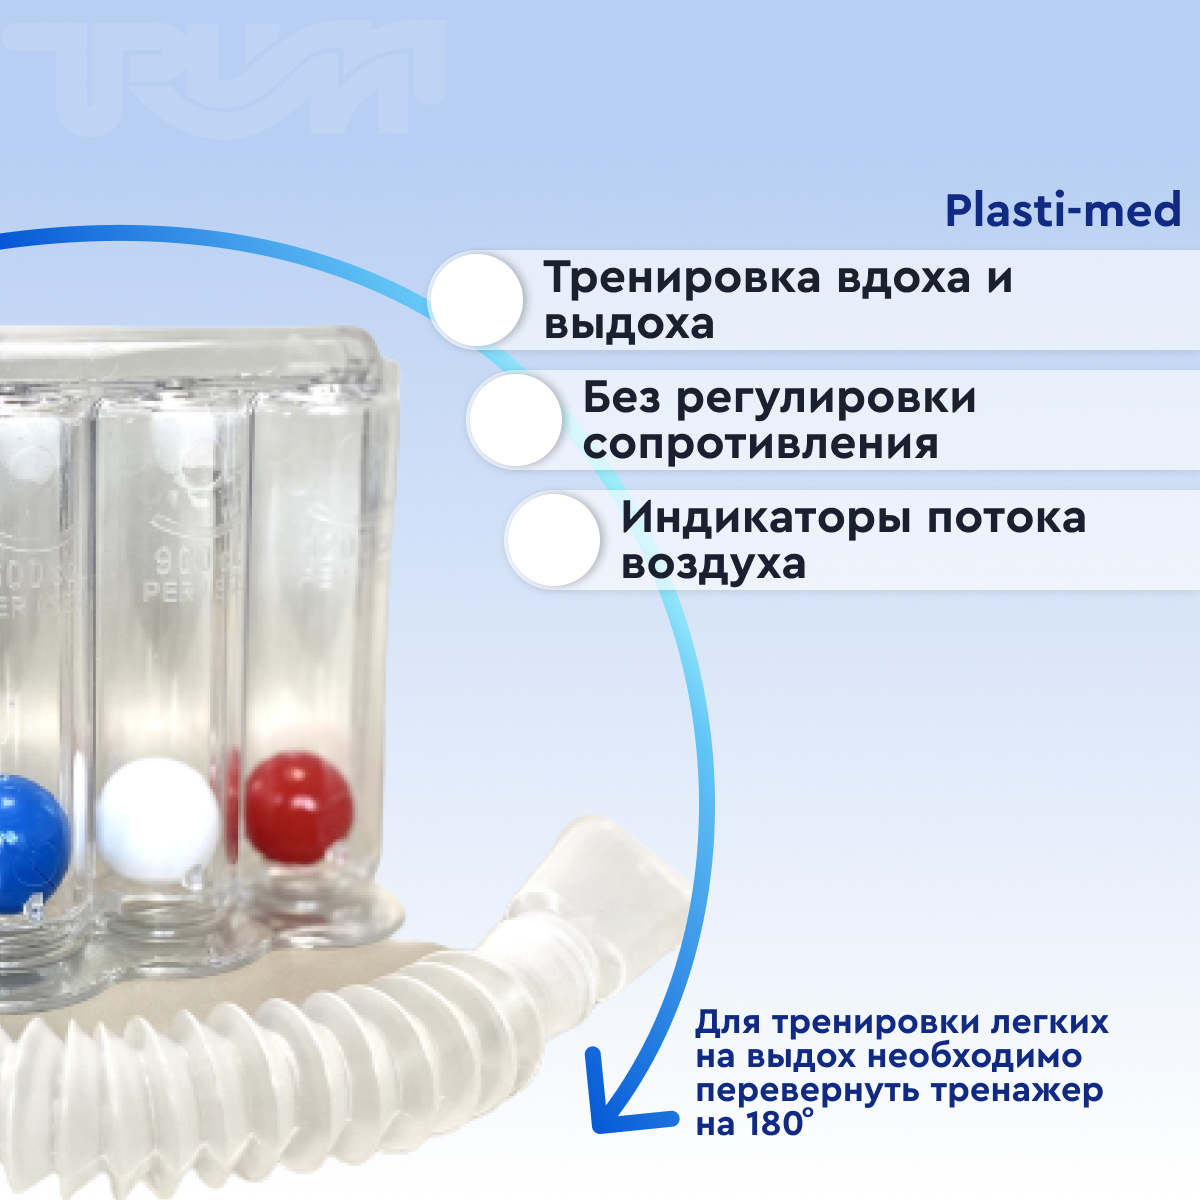 Прибор для дыхательных упражнений - дыхательный тренажер  от интернет-магазина trimm.store